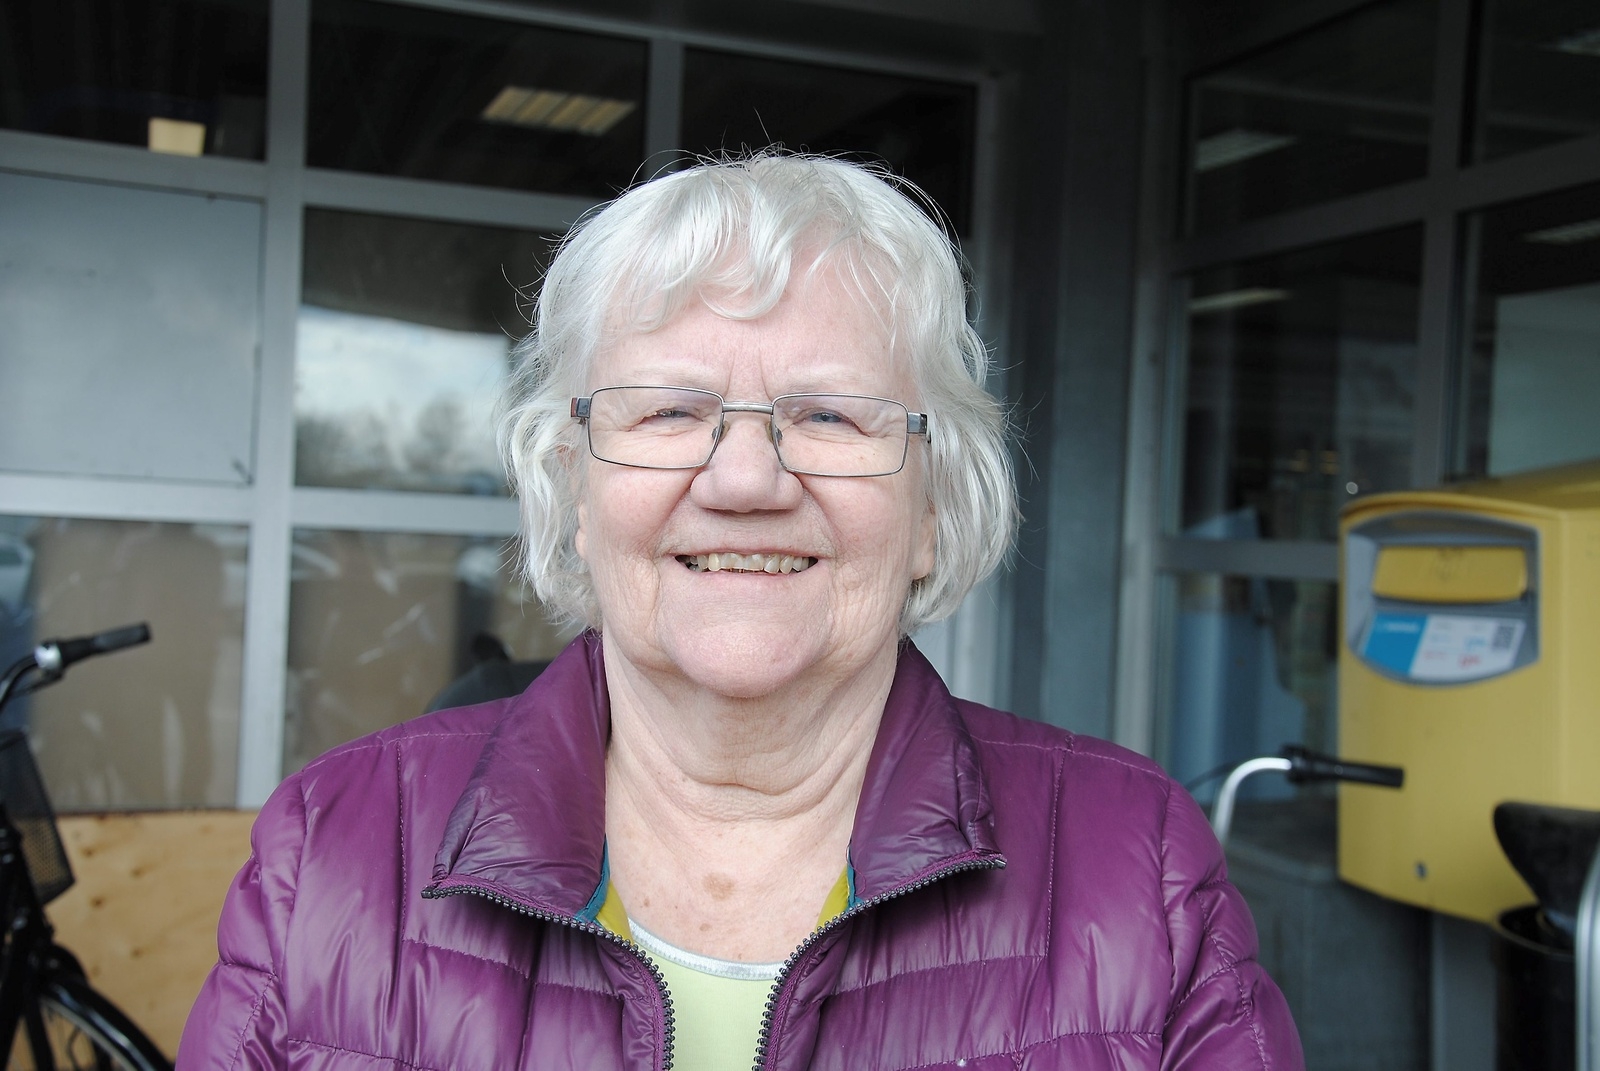 Irene Ekdahl, 85 år, Hässleholm:
— Ja, många mår dåligt av rökningen. Min man har fått kol och han började röka när han var 14 år. Ungdomar kanske också avhålls från att börja röka.